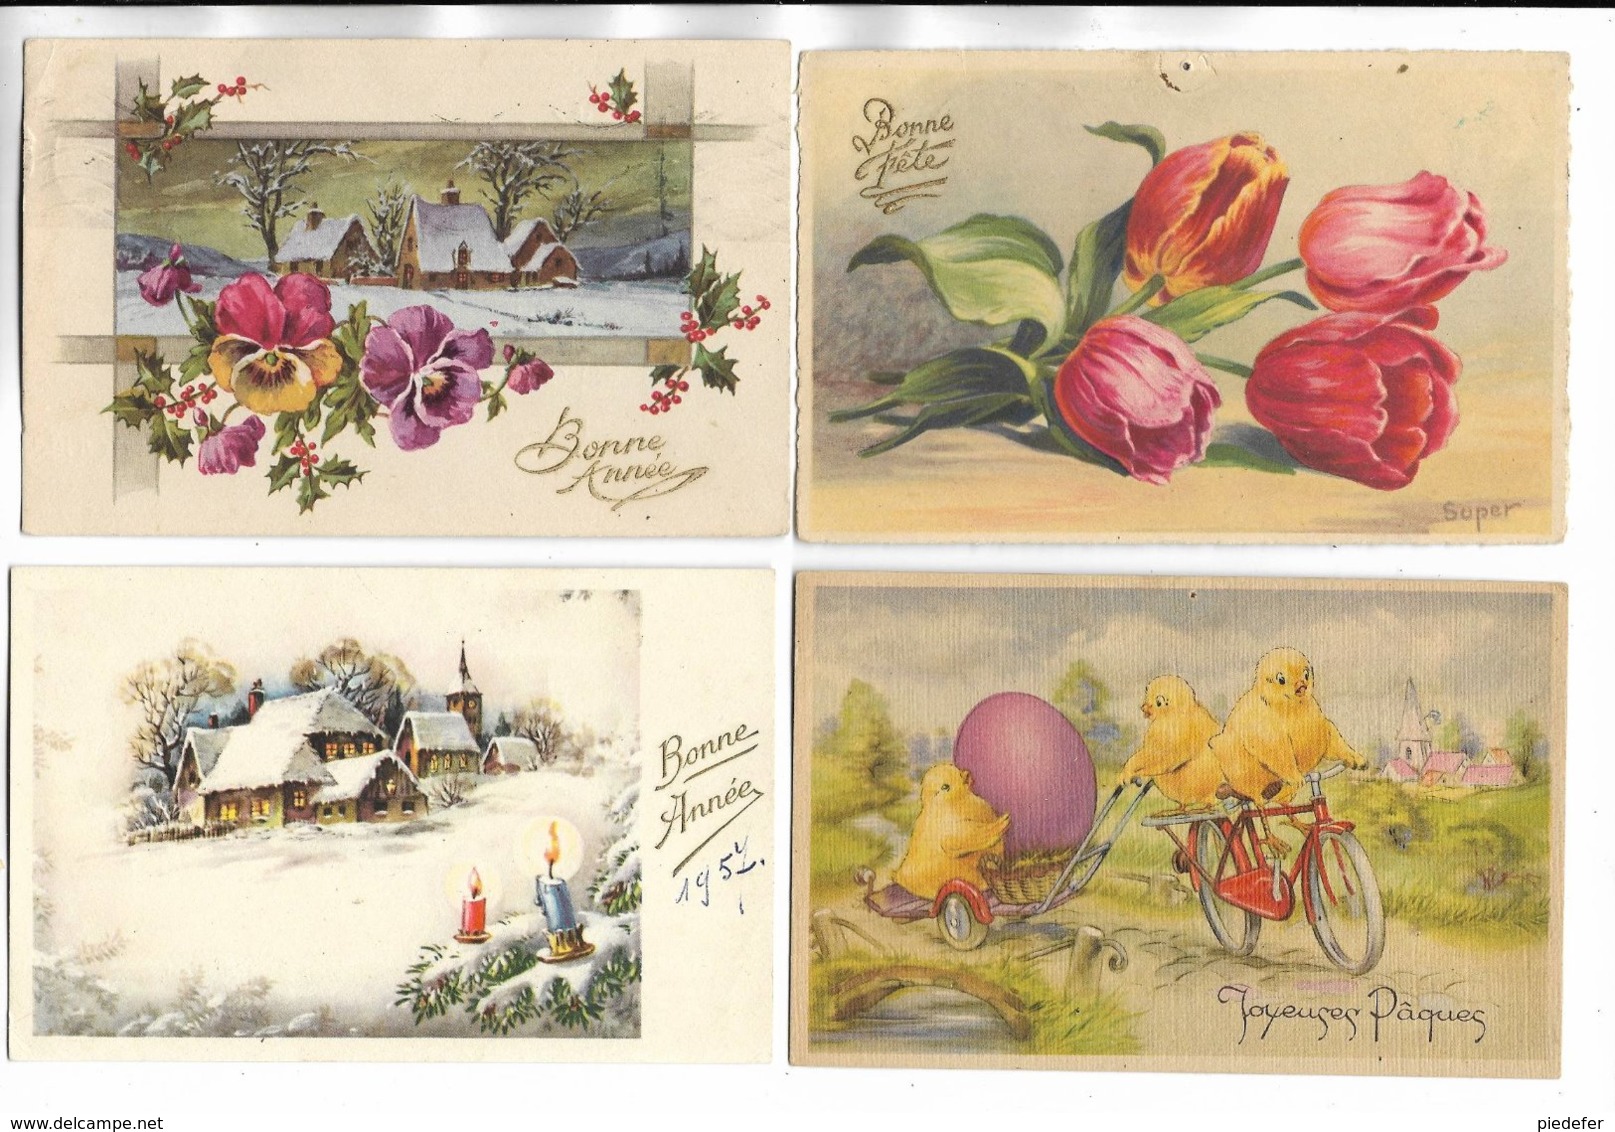 Beau lot de 40 cartes postales diverses de voeux ( Noël, Nouvel-an. Paques. anniversaire ) - Toutes scannées